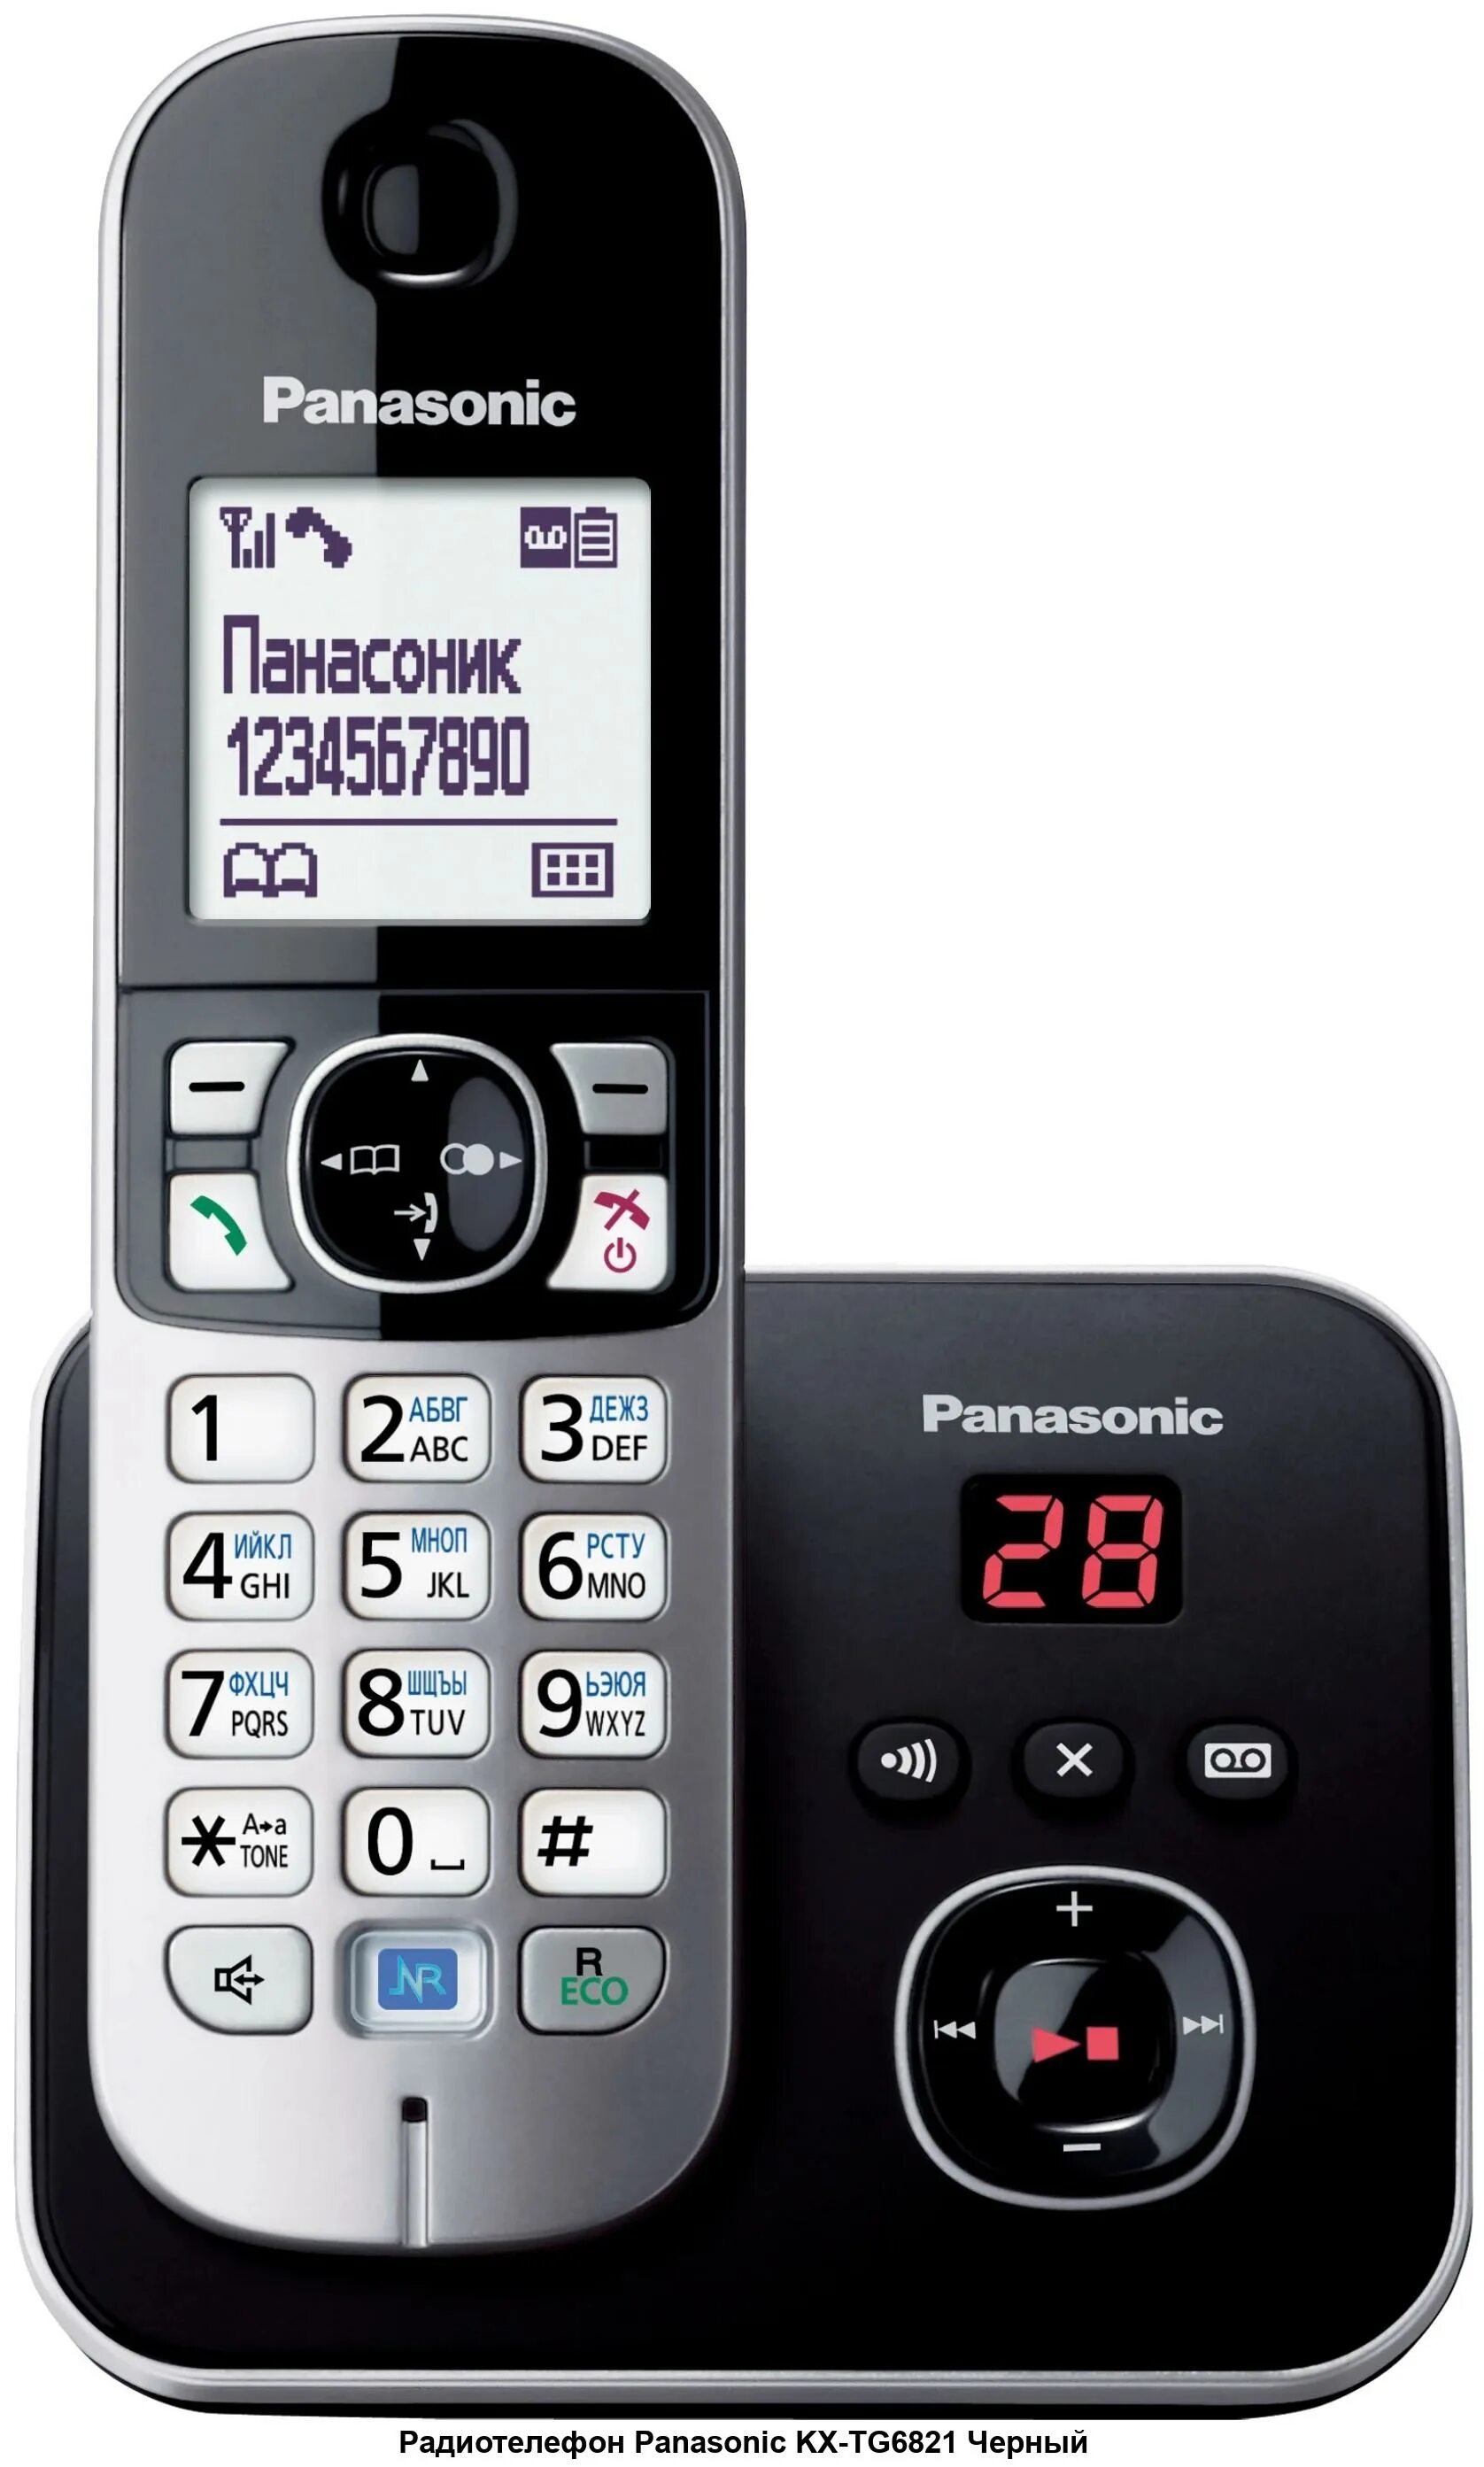 Панасоник телефон домашний трубка. Радиотелефон Panasonic KX-tg6811rub. DECT Panasonic KX-tg6811rub. Радиотелефон Panasonic KX-tg6821rub. Радиотелефон Panasonic KX-tg6811.